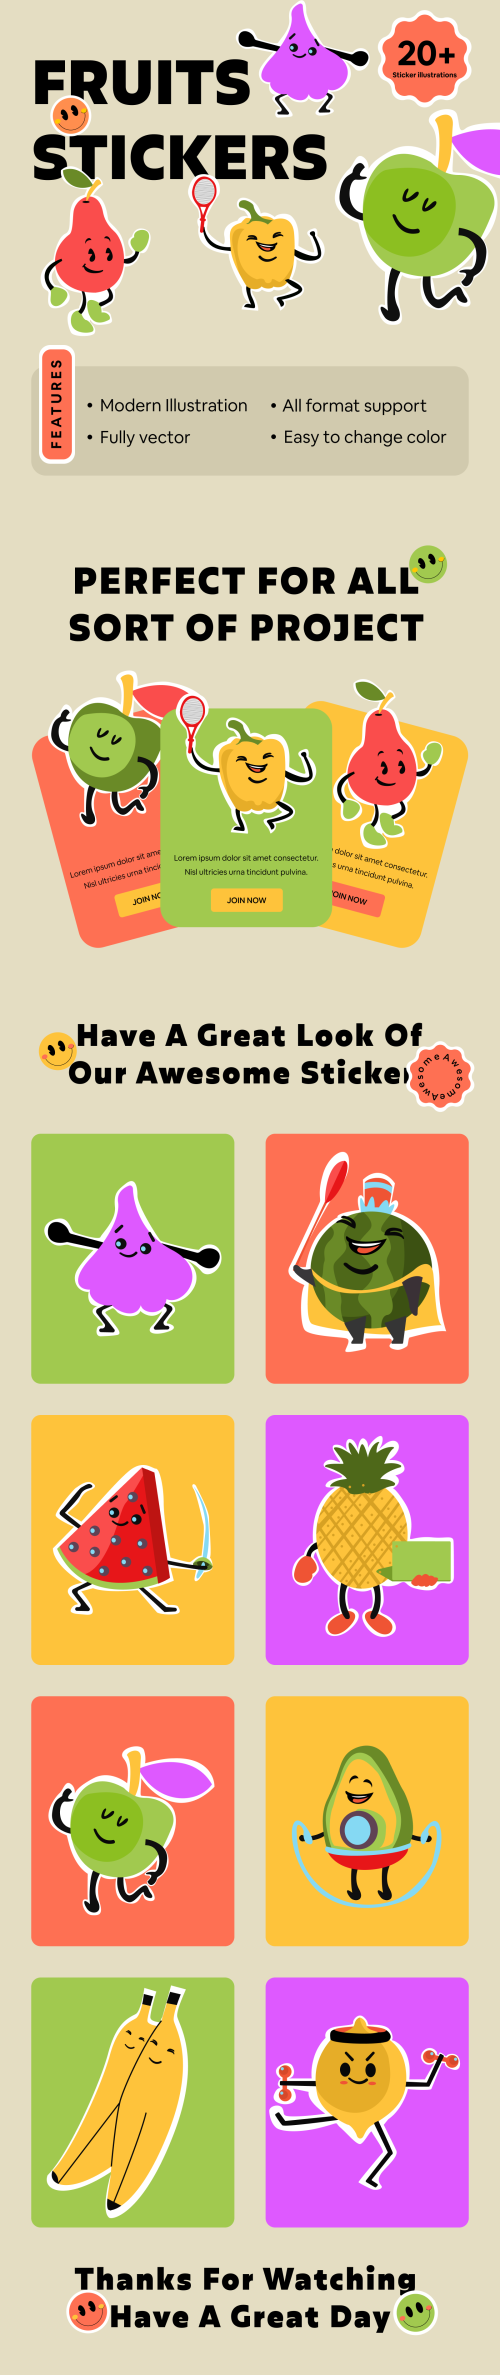 UIHut - Fruit Sticker Illustration Pack Free Download - 24618